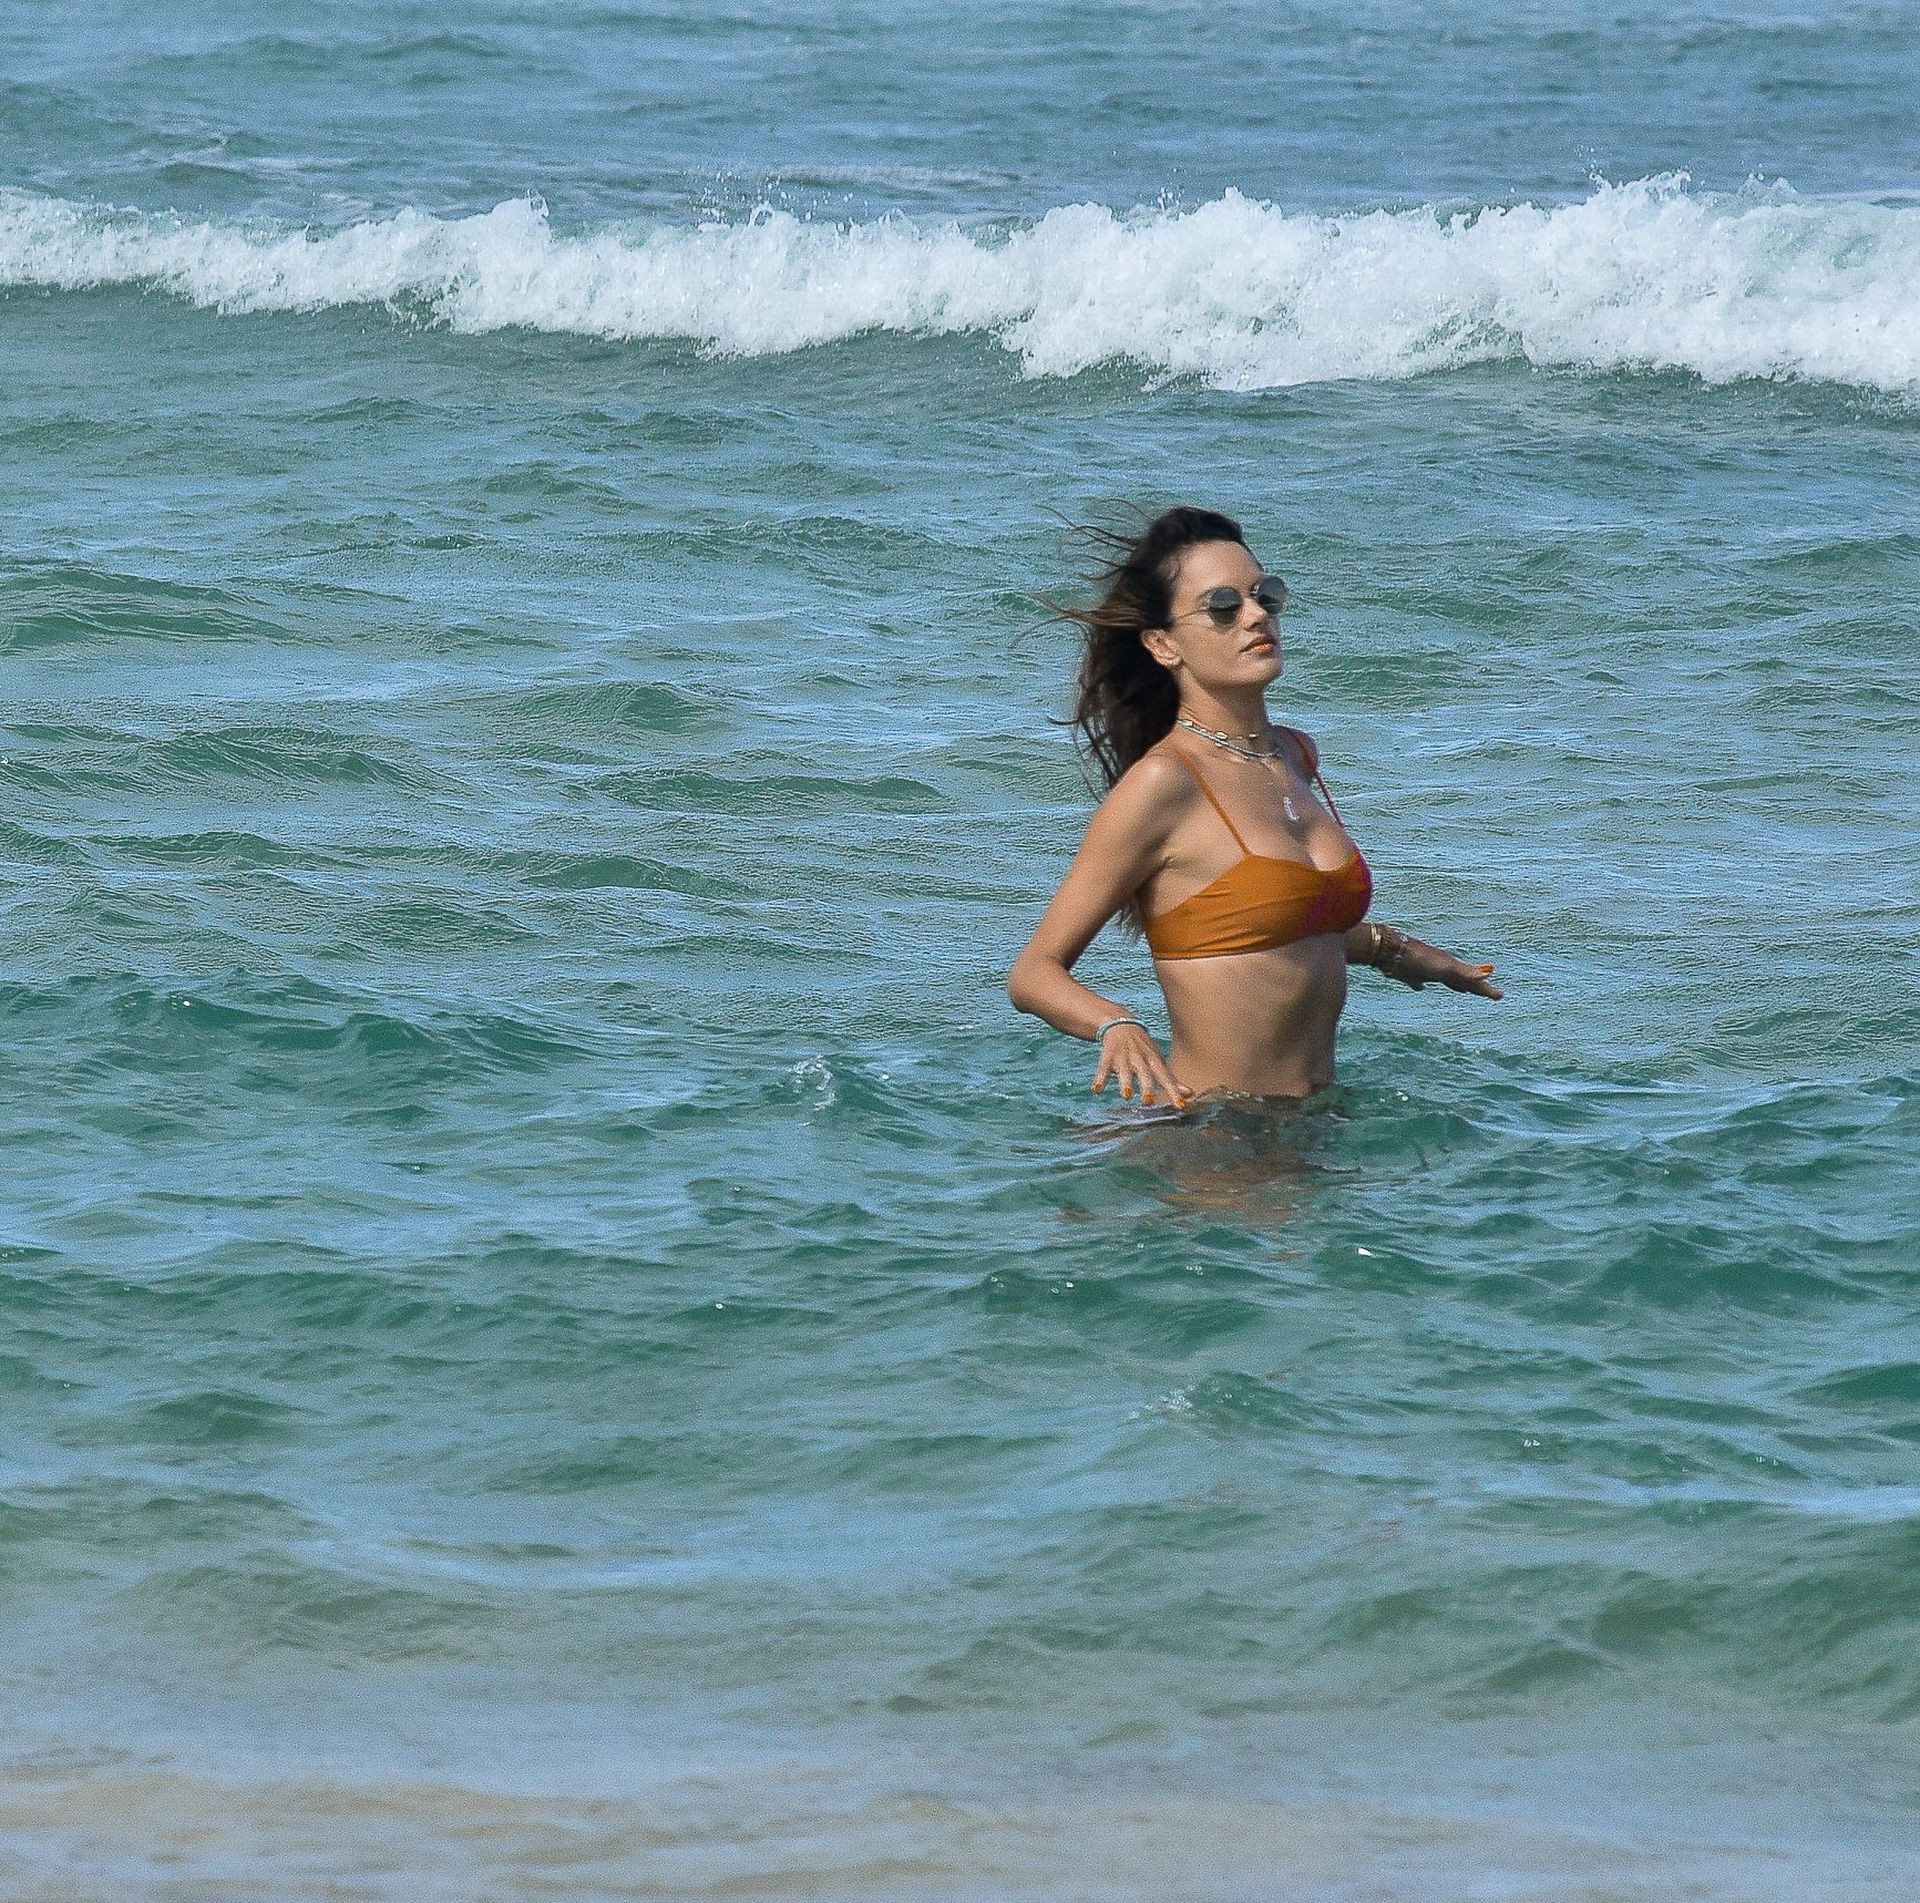 Alessandra Ambrosio Parades in a Bikini as She Enjoys Brazilian Vacation (39 Photos)